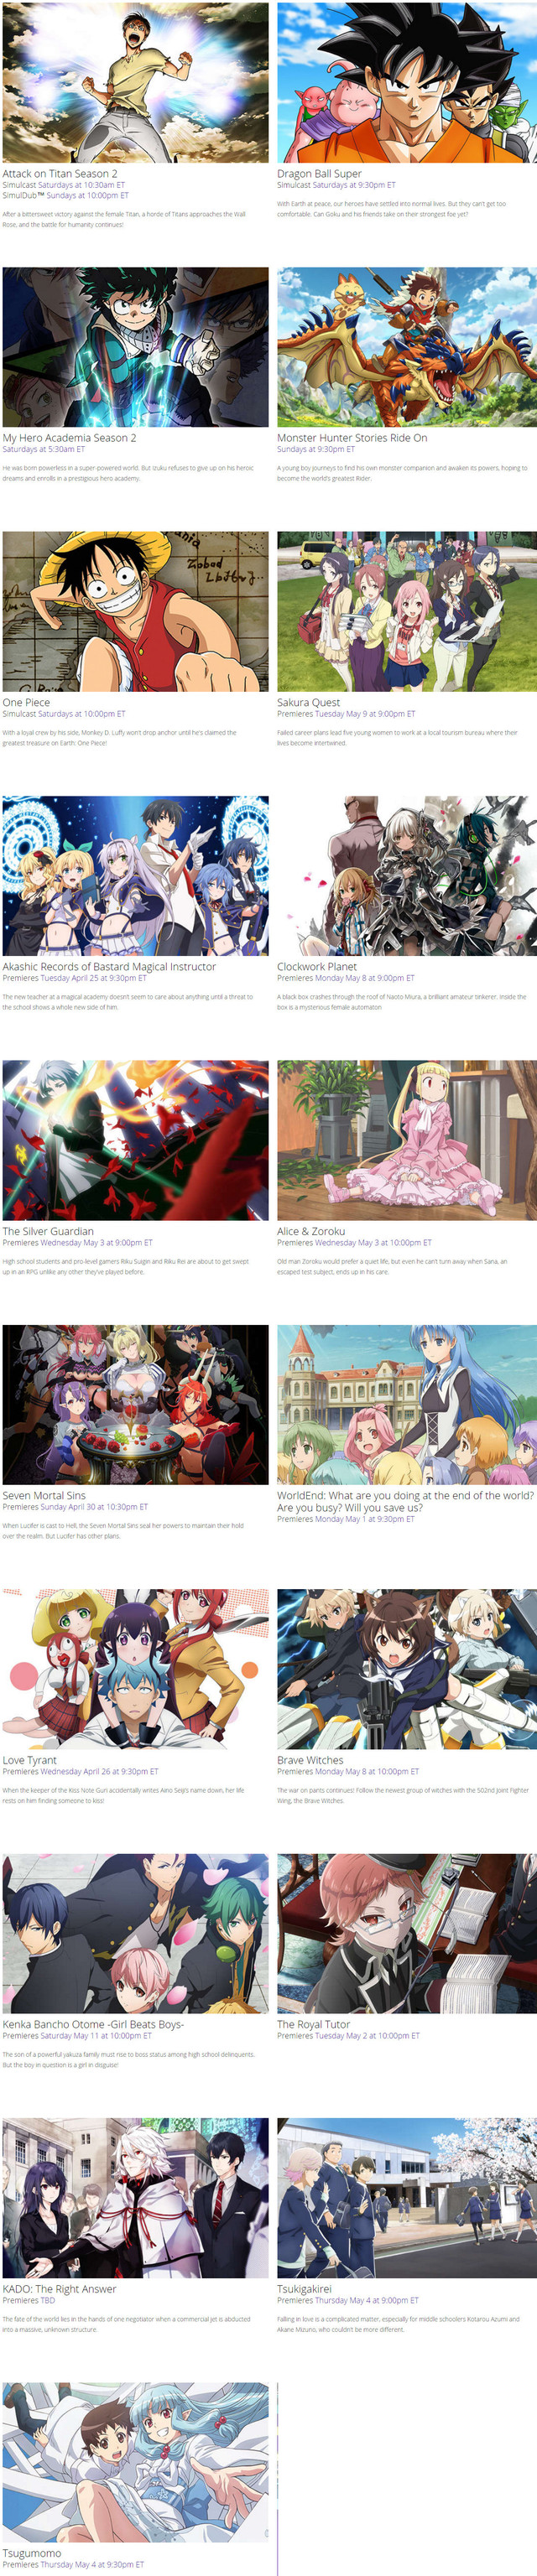 Crunchyroll Funimation Announces Spring Anime SimulDub Schedule